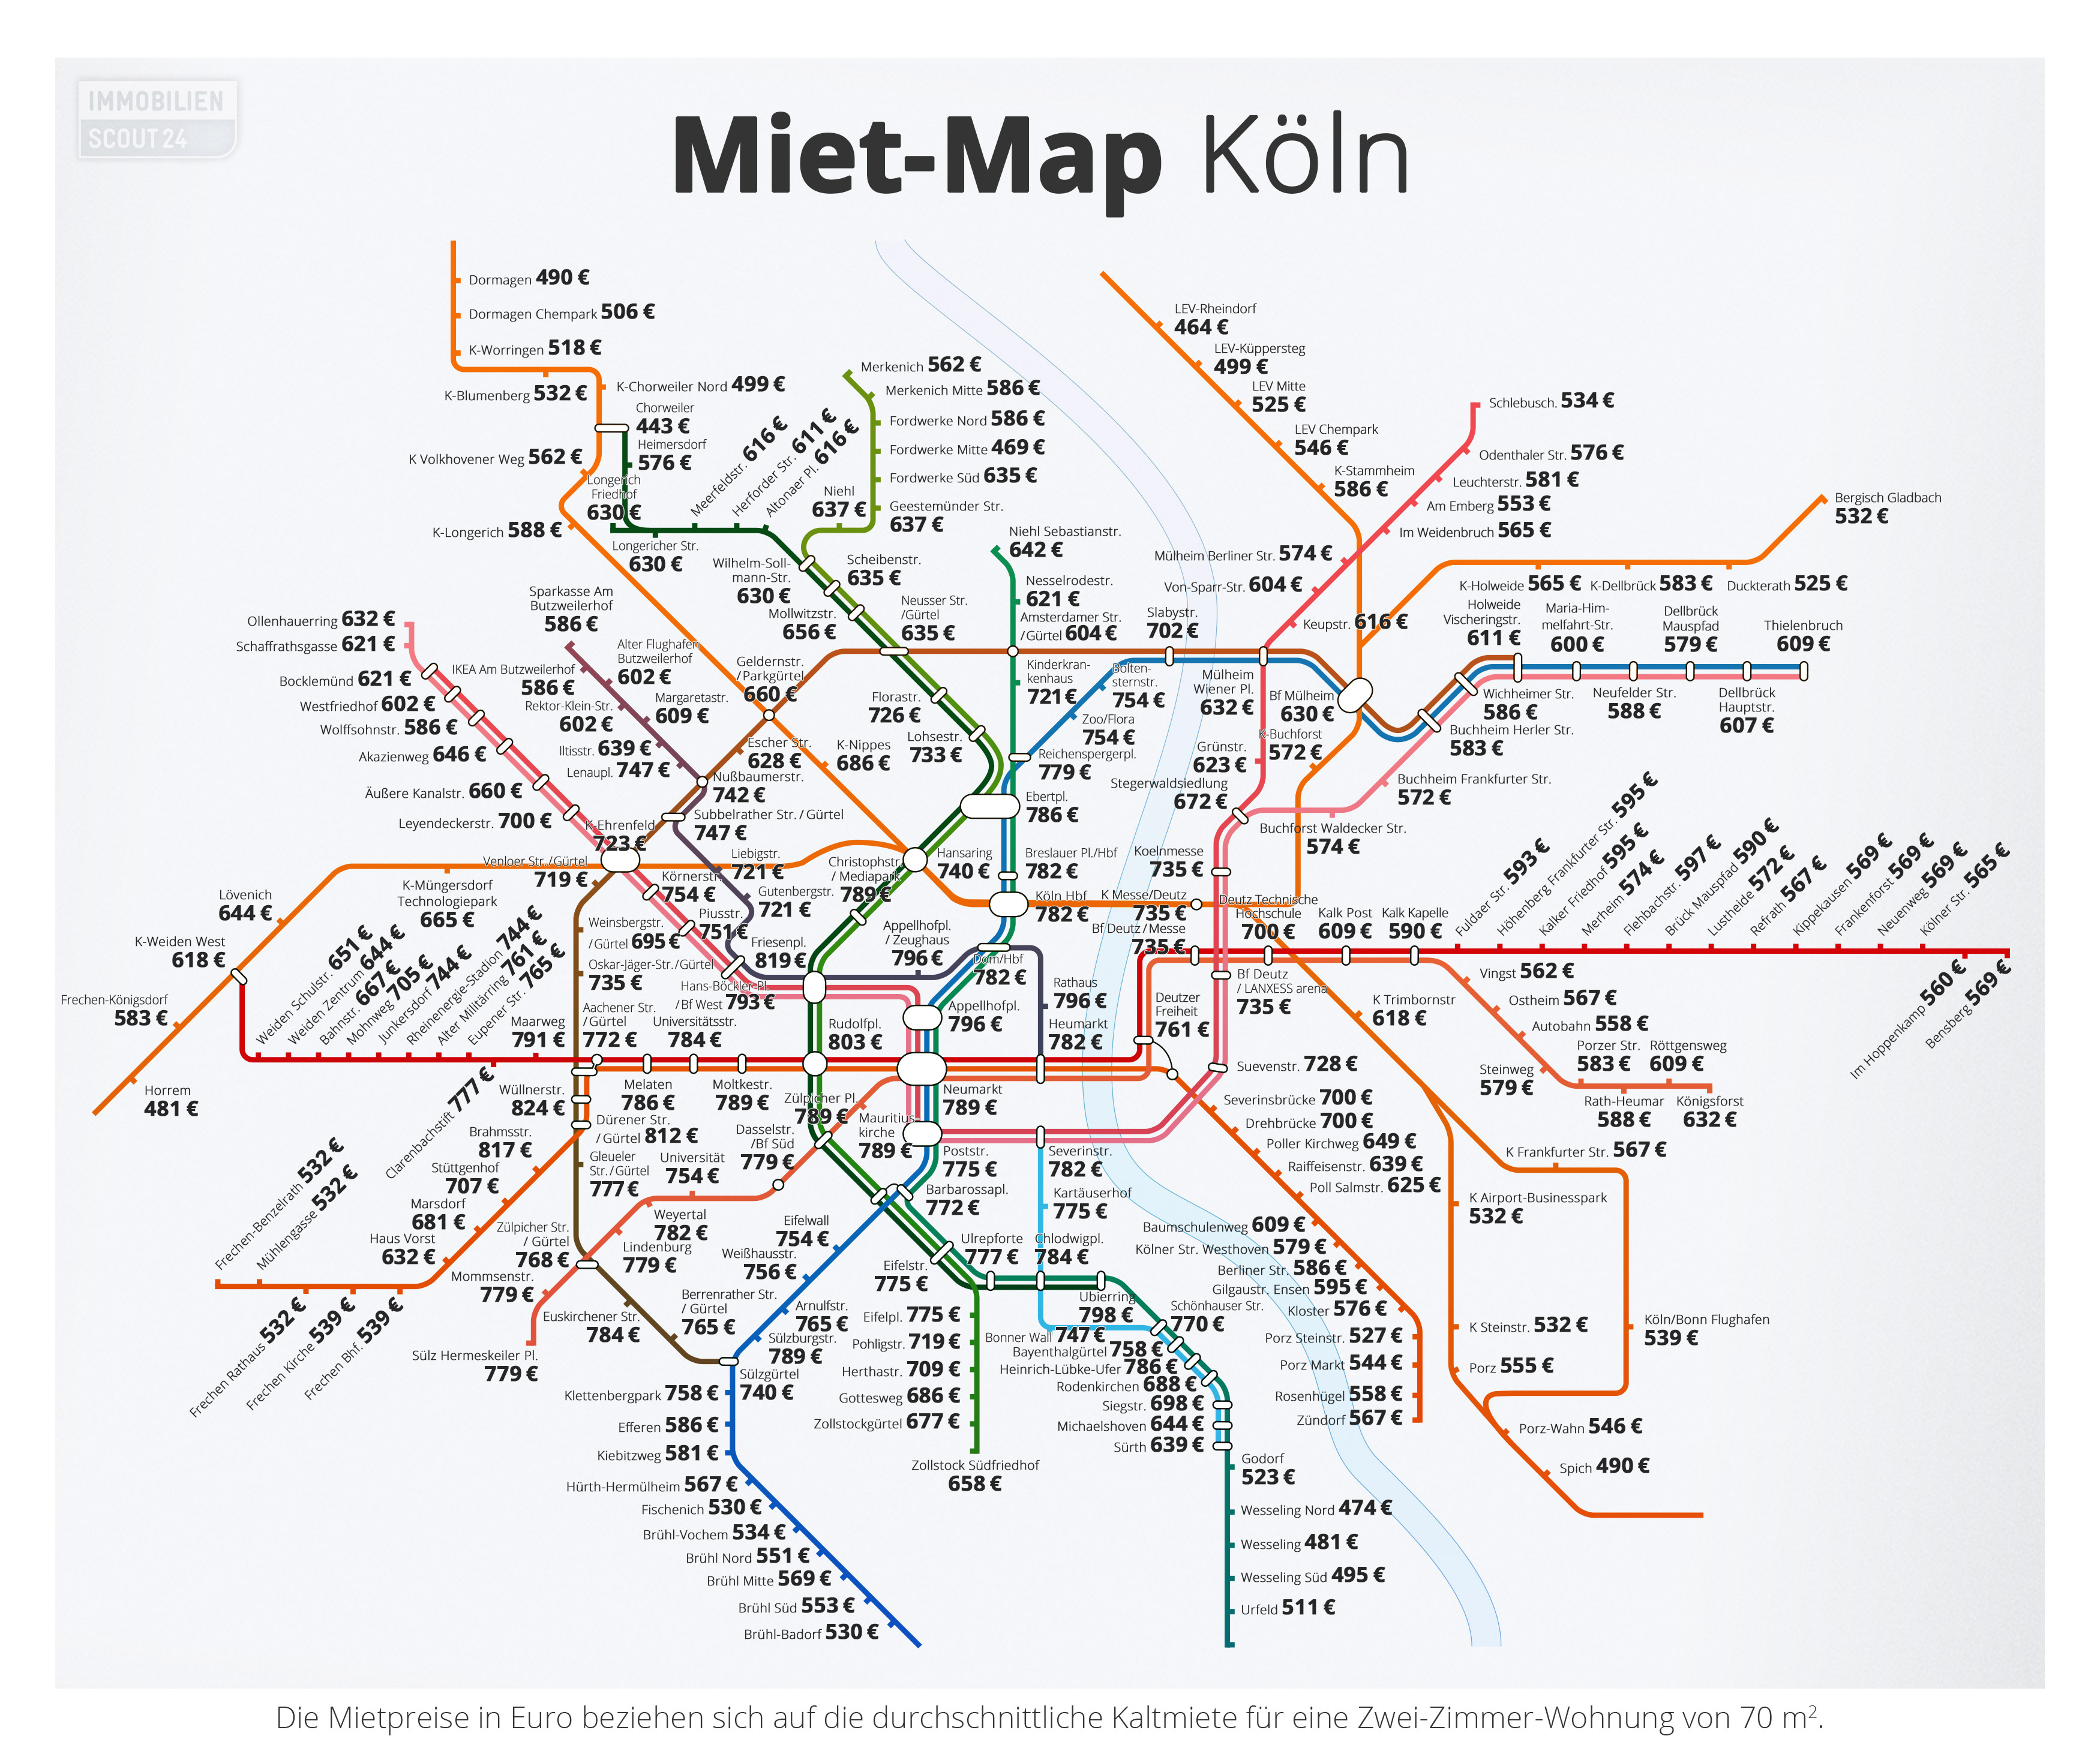 Miet-Map Köln